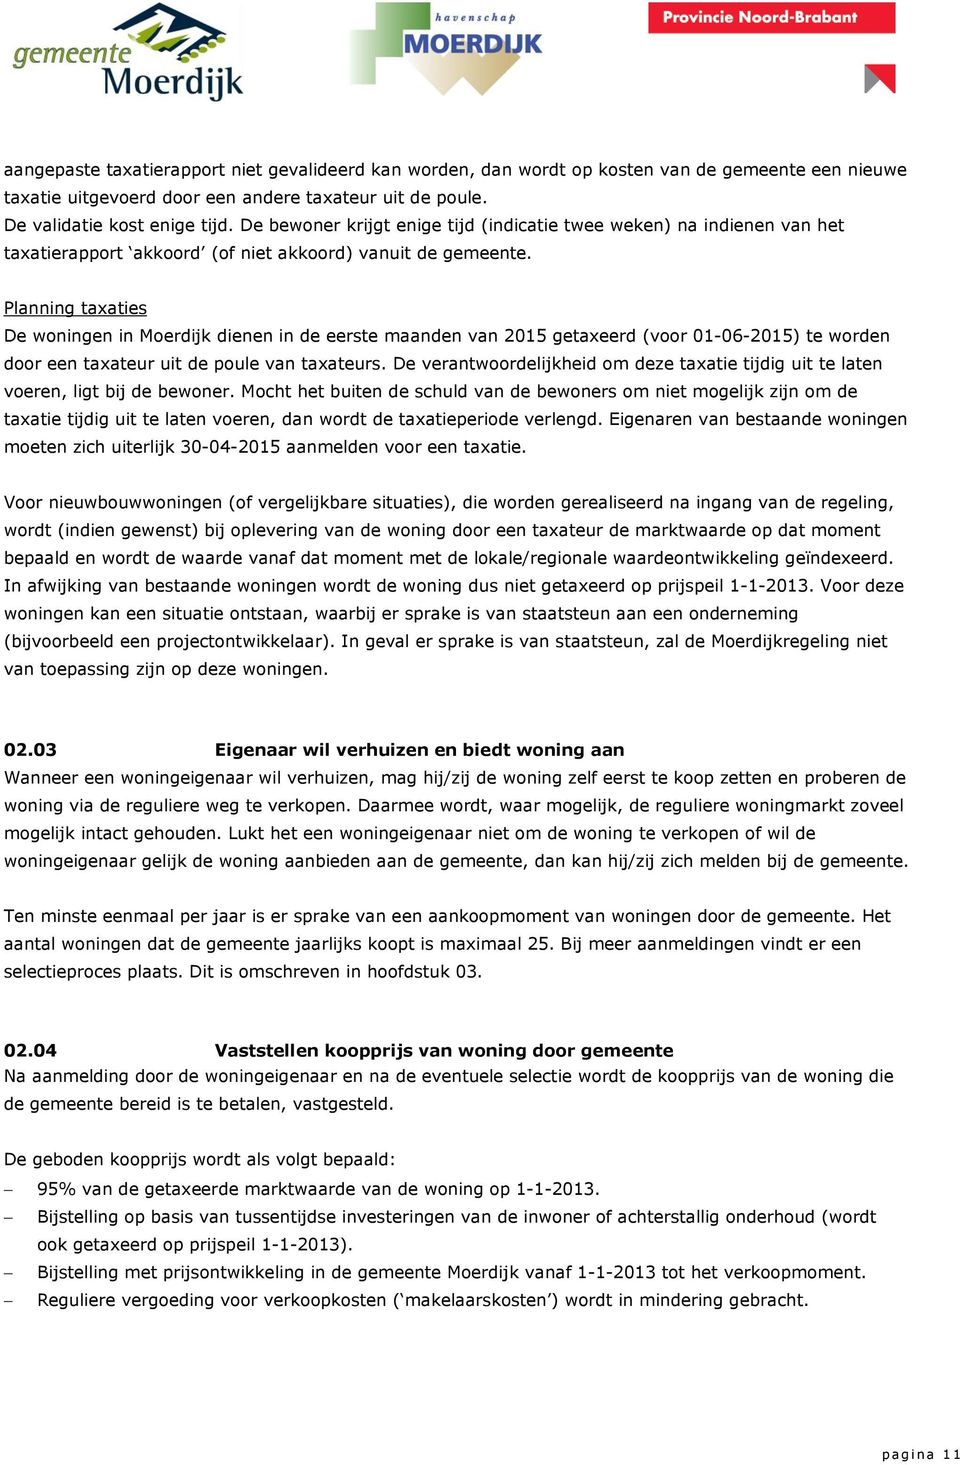 Planning taxaties De woningen in Moerdijk dienen in de eerste maanden van 2015 getaxeerd (voor 01-06-2015) te worden door een taxateur uit de poule van taxateurs.